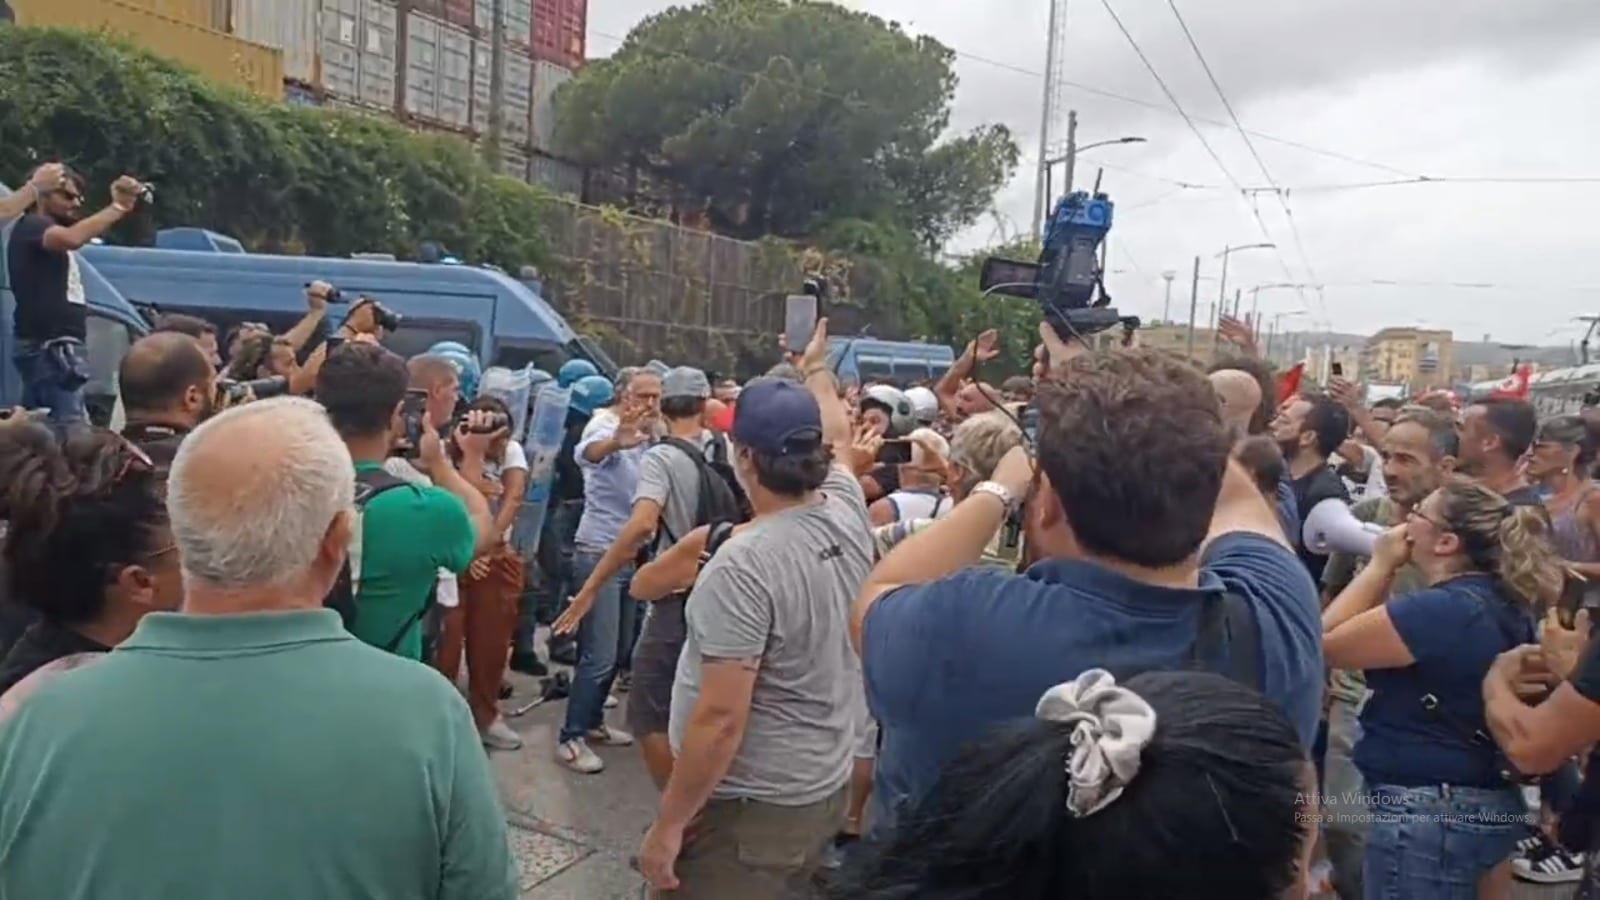 Reddito di cittadinanza, scontri a Napoli alla manifestazione contro il governo: tensioni con la polizia